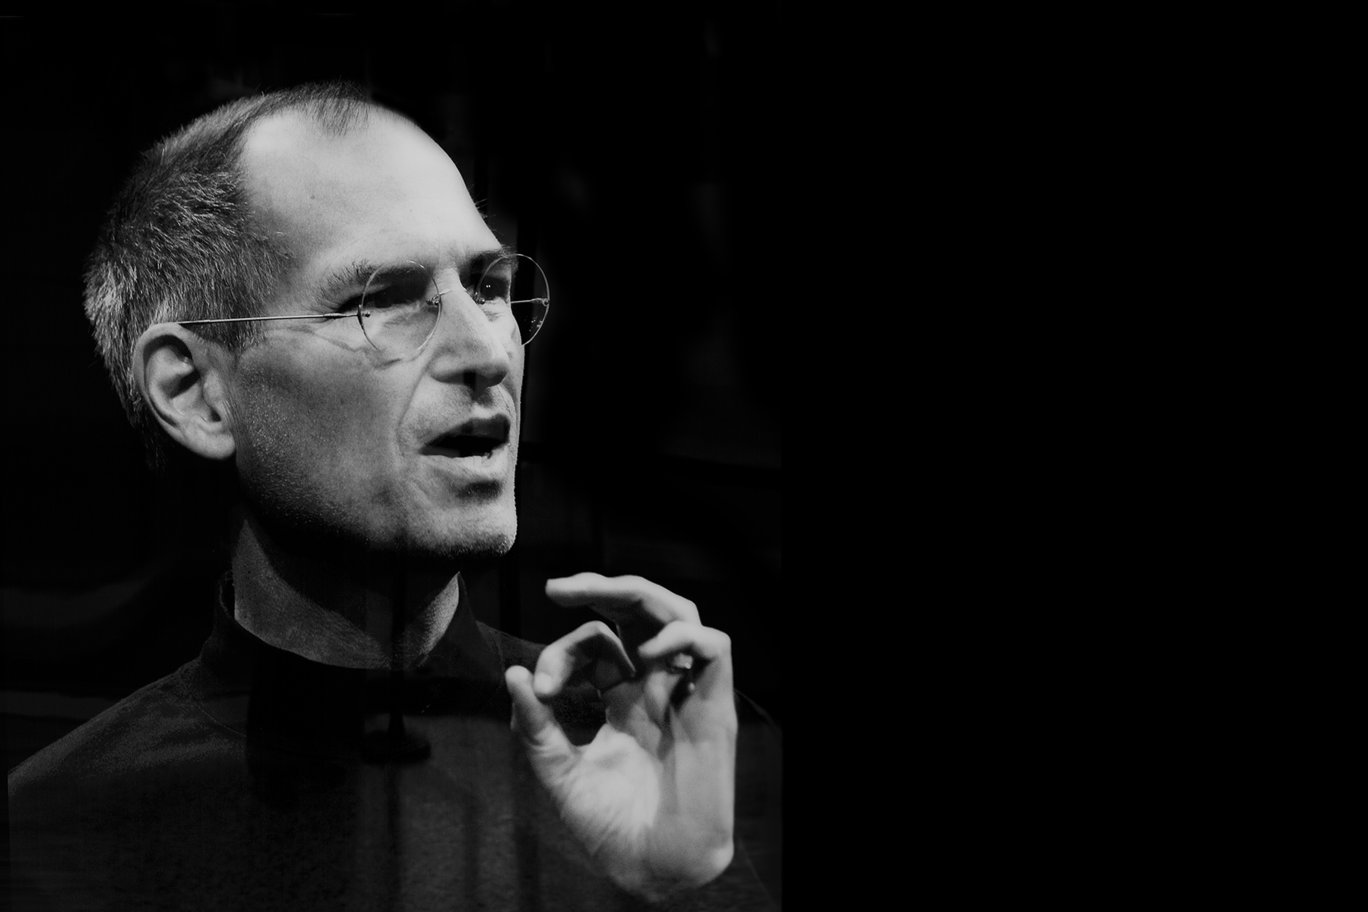 O Inesperado Steve Jobs e Suas Invenções - Blog de Psicologia Melkberg - invenções - Steve Jobs - Apple - família - empresa - vida